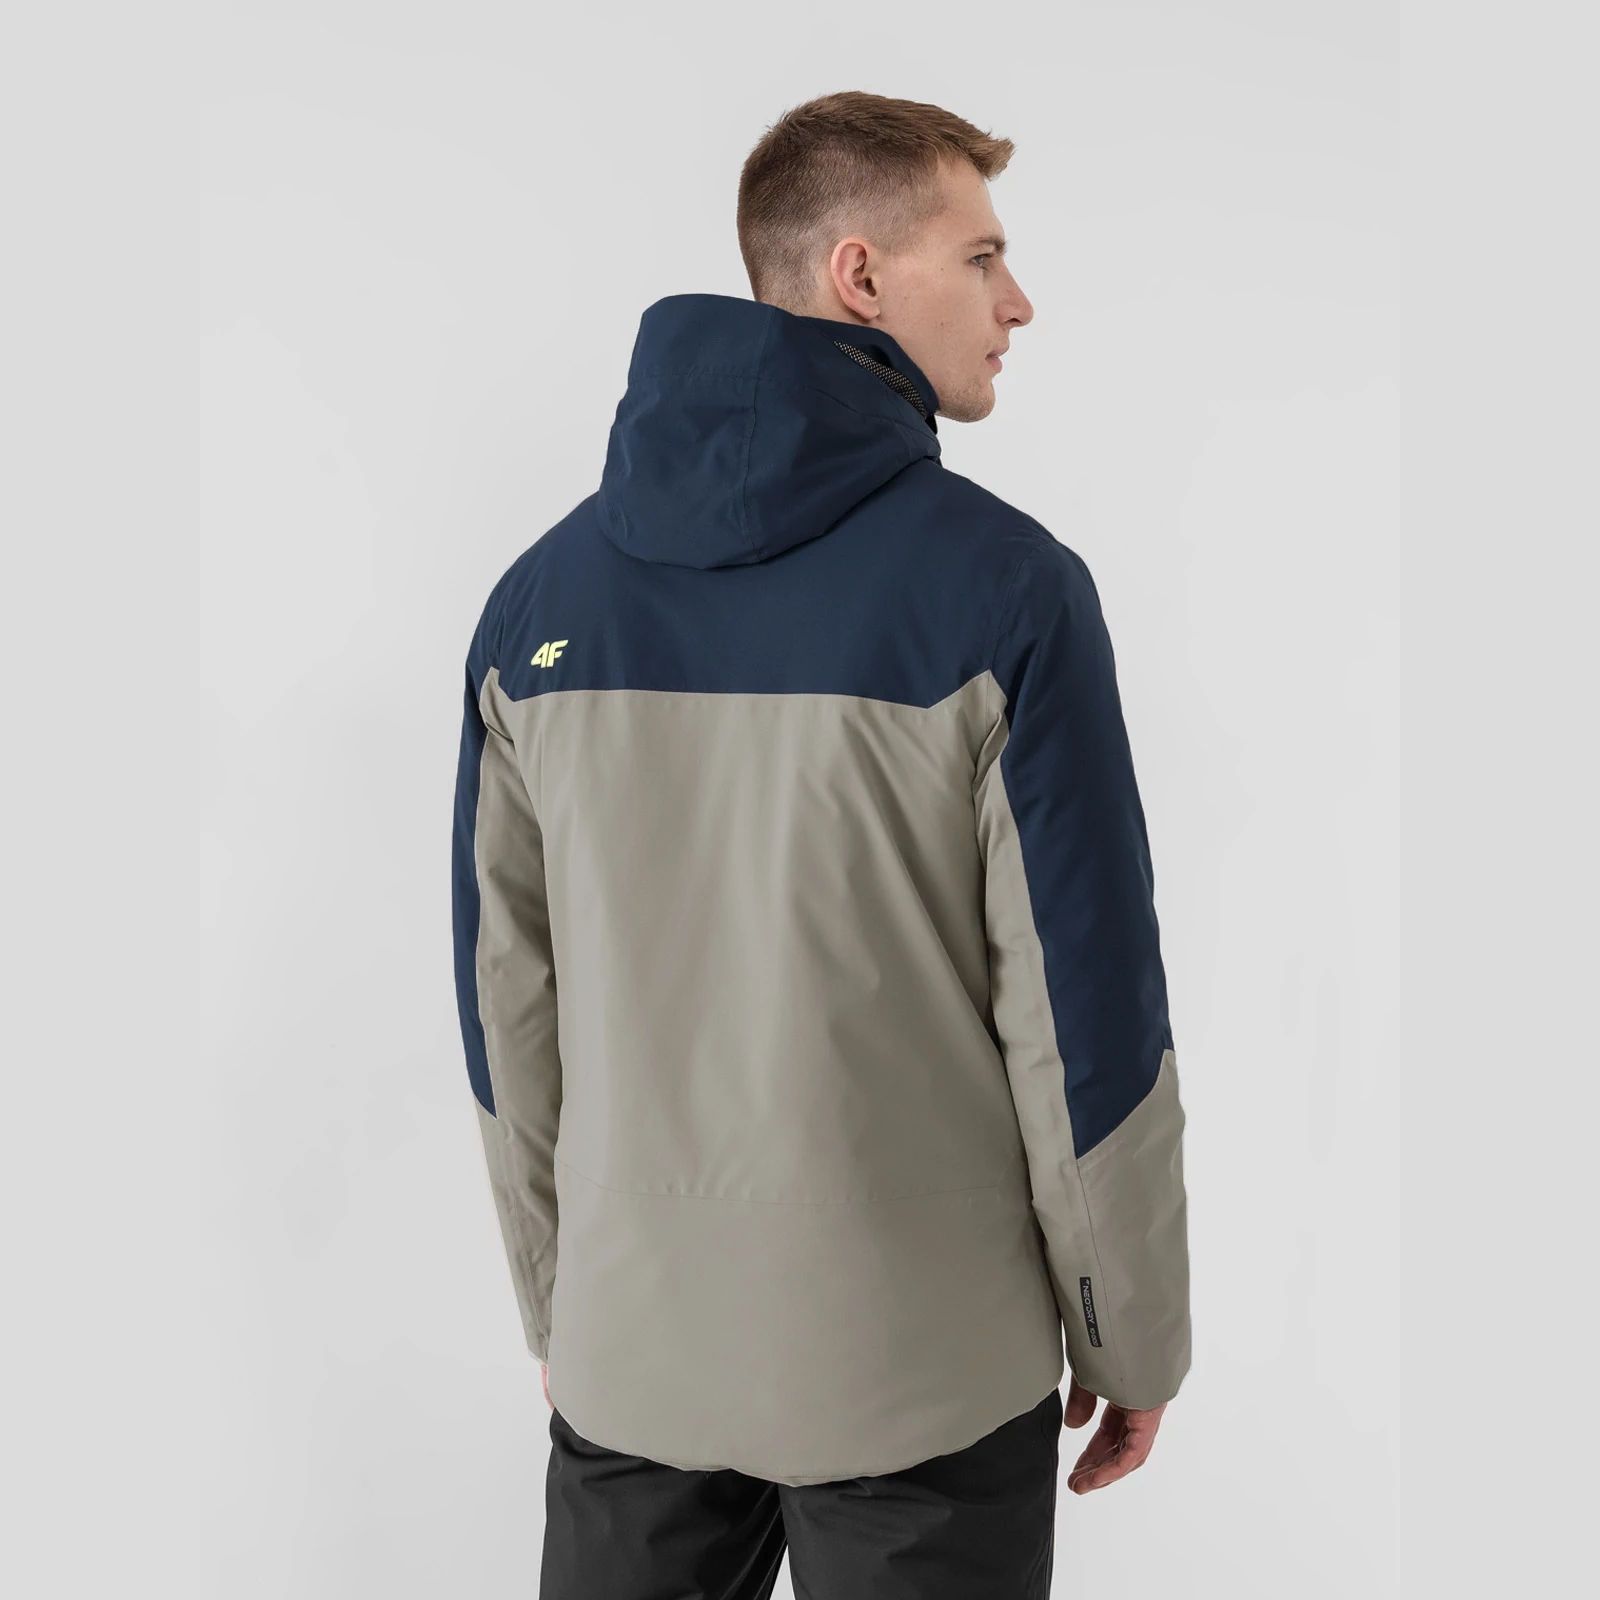 Geci Ski & Snow -  4f Men ski jacket KUMN010